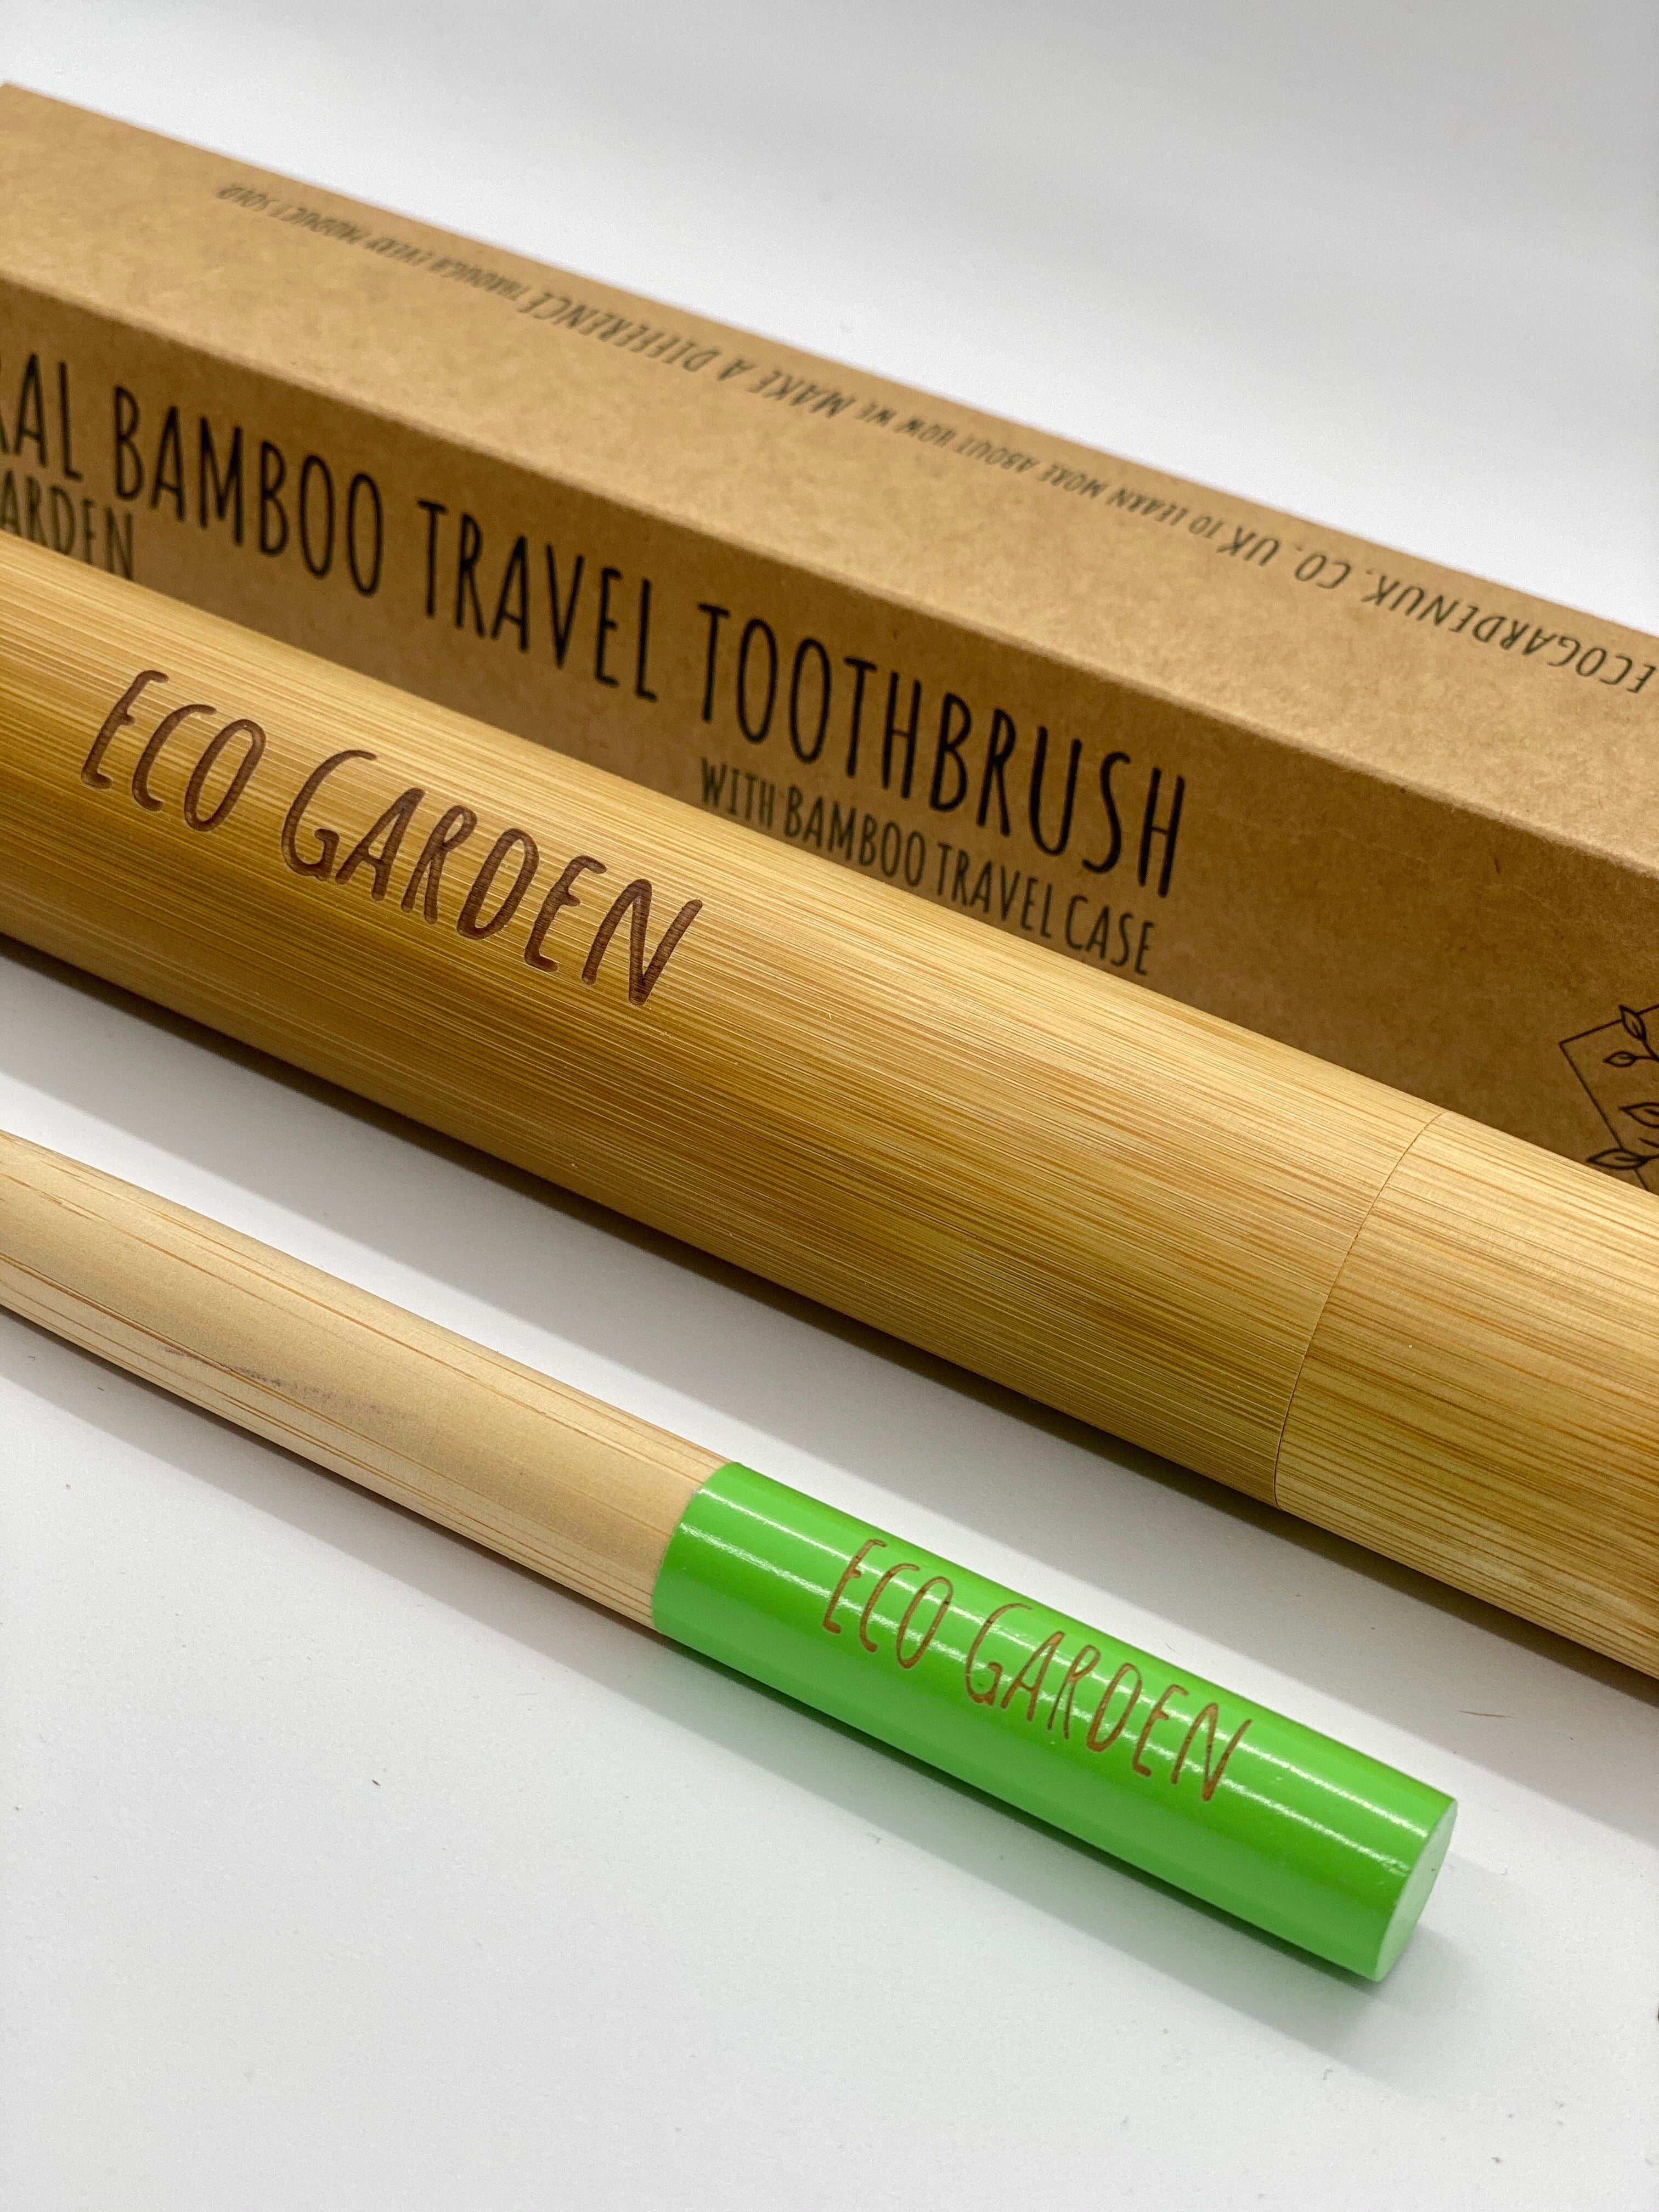 Celadon Green Eco Garden Bamboo Travel Toothbrush 